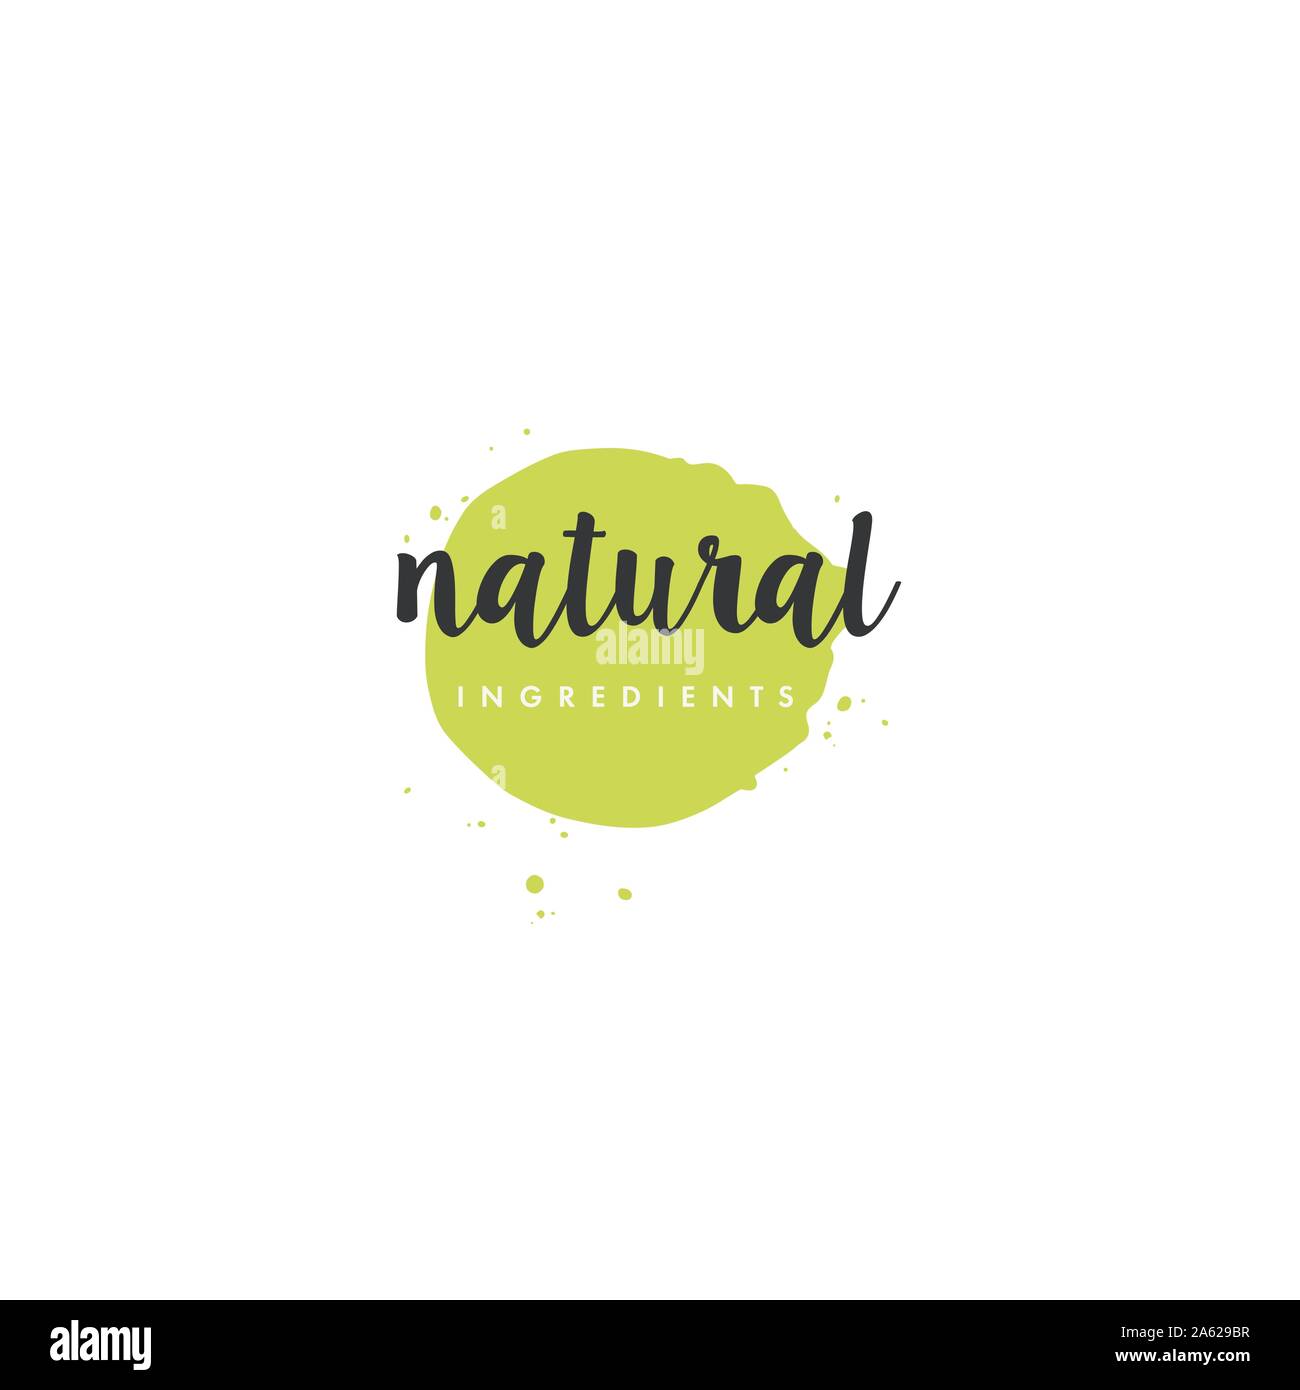 Naturprodukt-Icons und Elemente-Kollektion für den Lebensmittelmarkt, E-Commerce, Bio-Produkte Förderung, gesundes Leben und hochwertige Lebensmittel und Getränke. Stock Vektor